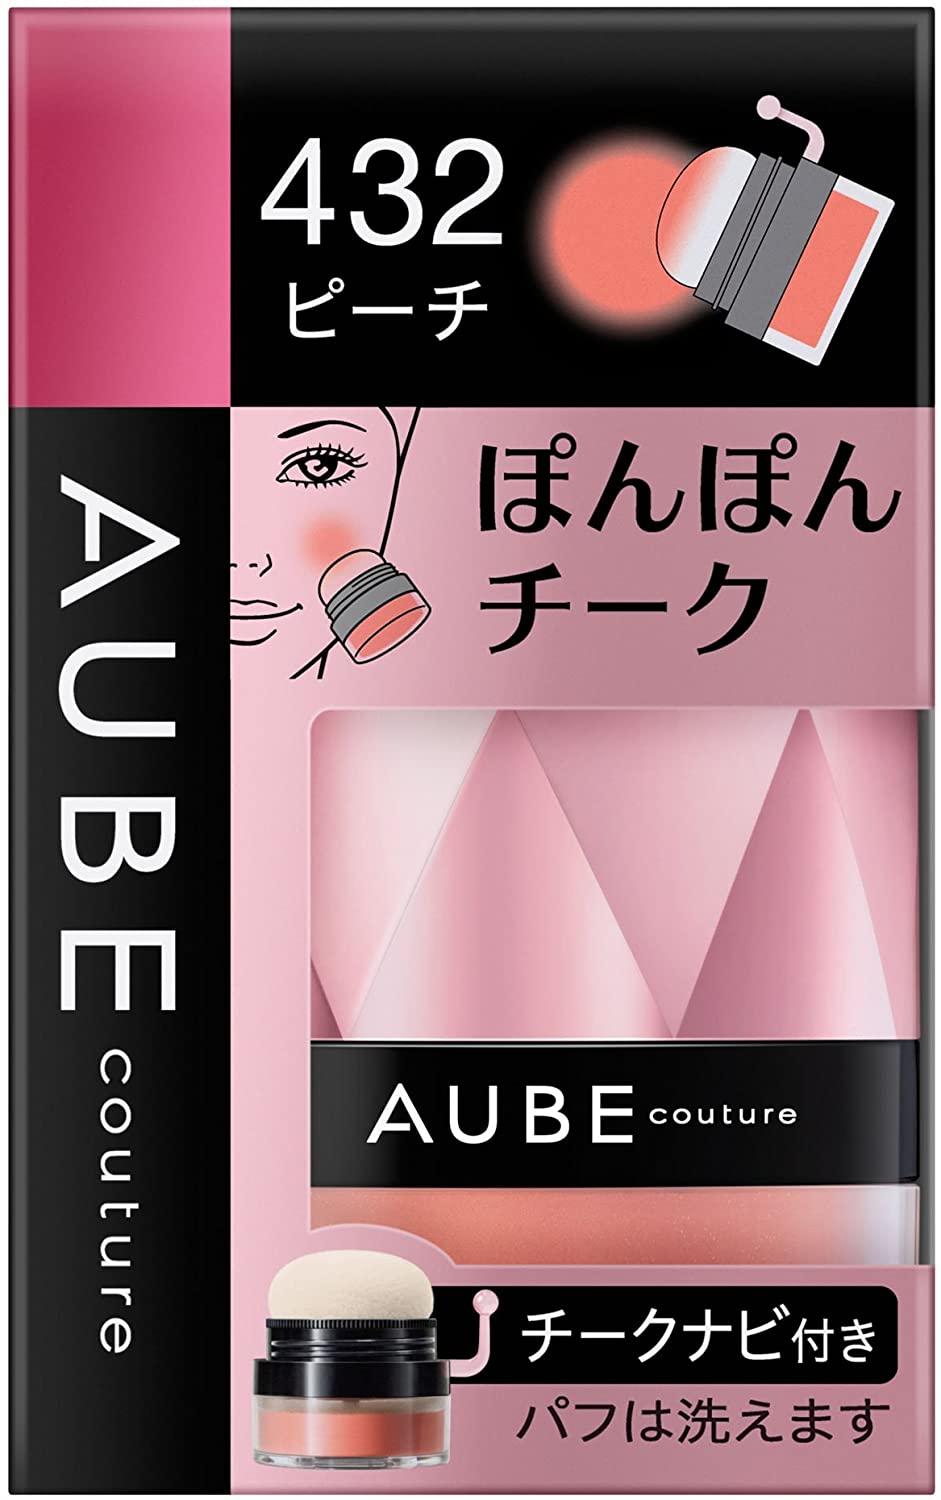 AUBE(オーブ) ぽんぽんチークの商品画像サムネ1 